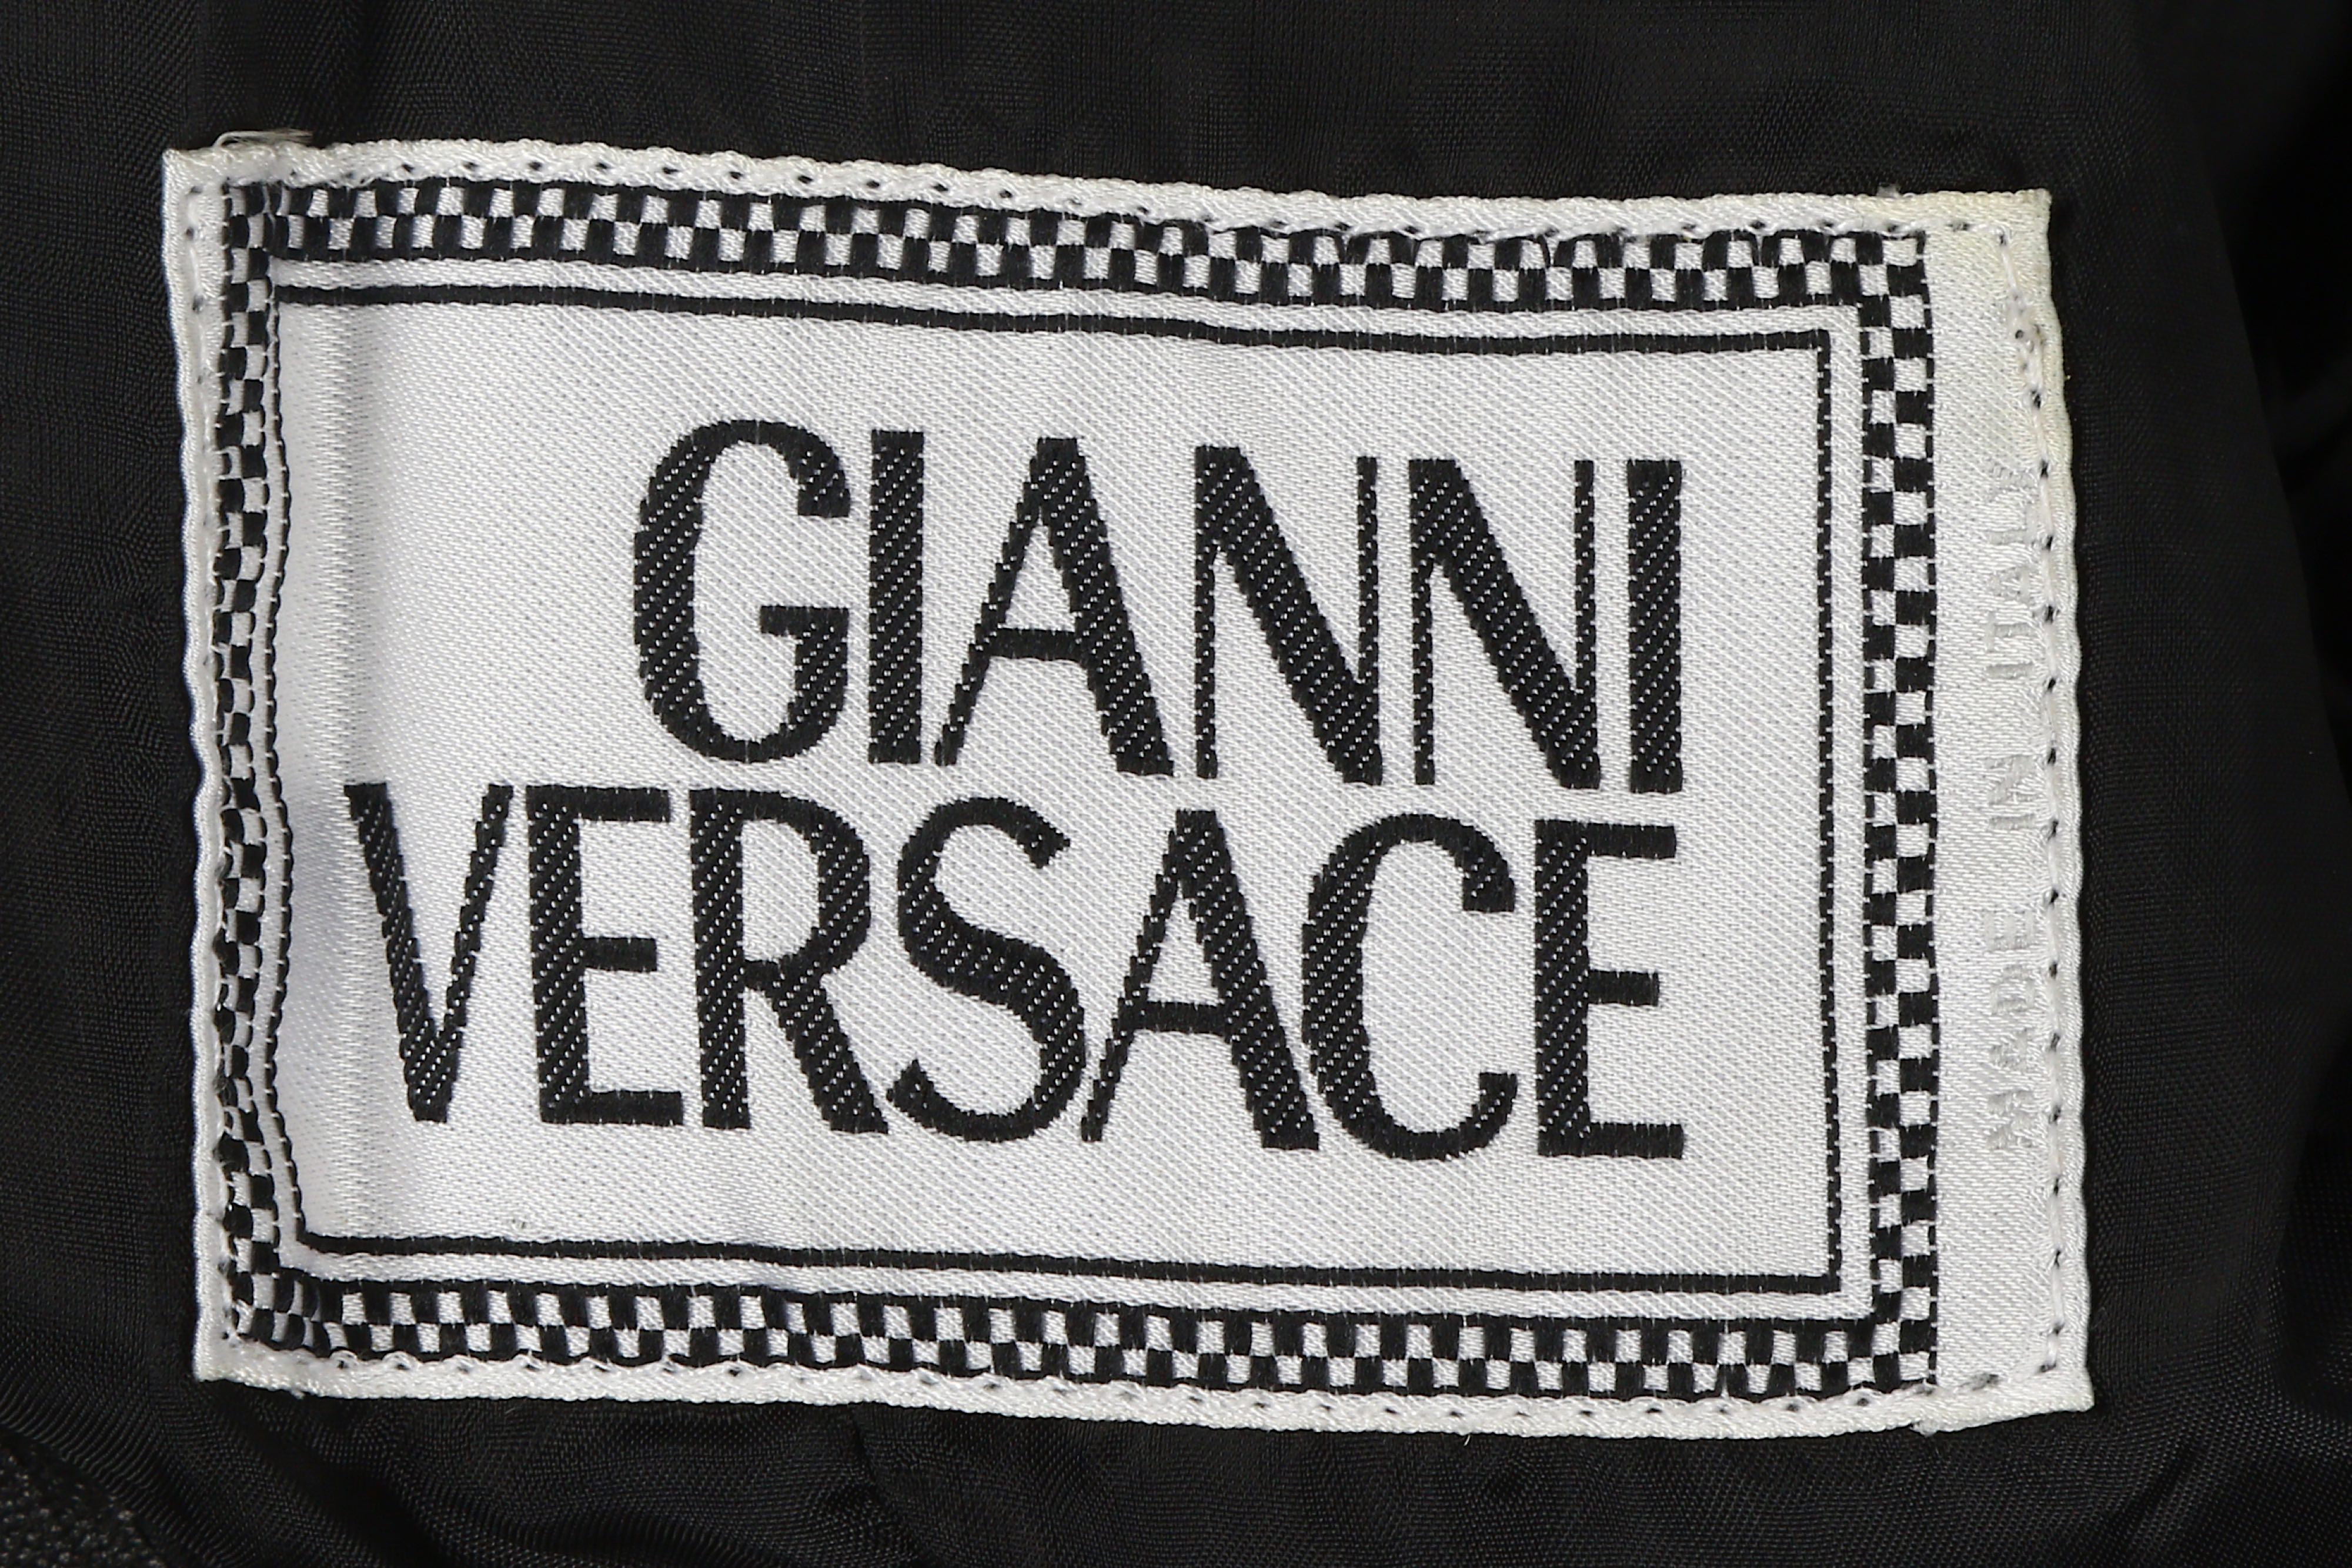 Gianni Versace Black Leather Jacket - Image 7 of 7